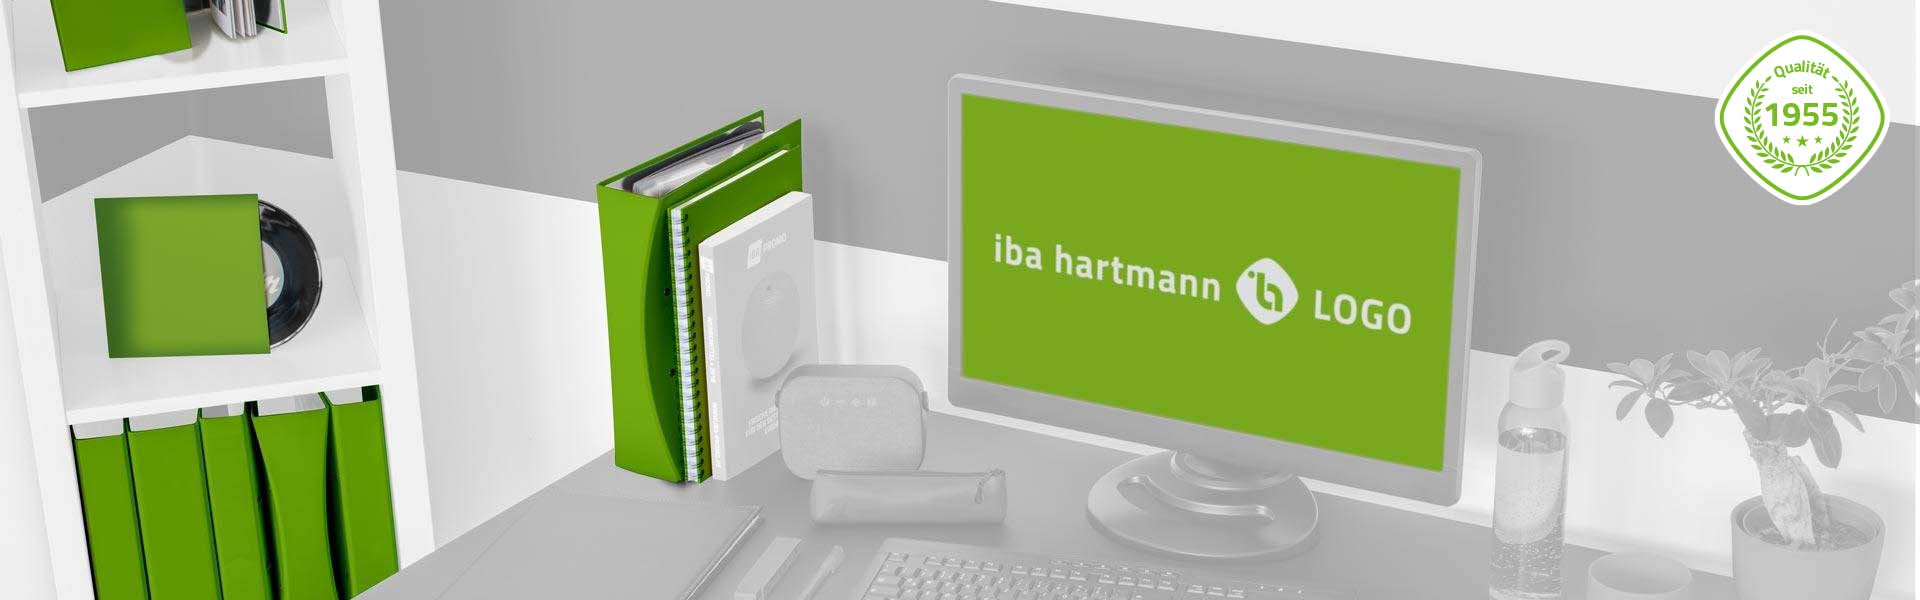 iba-hartmann-logo-portfolio-1955